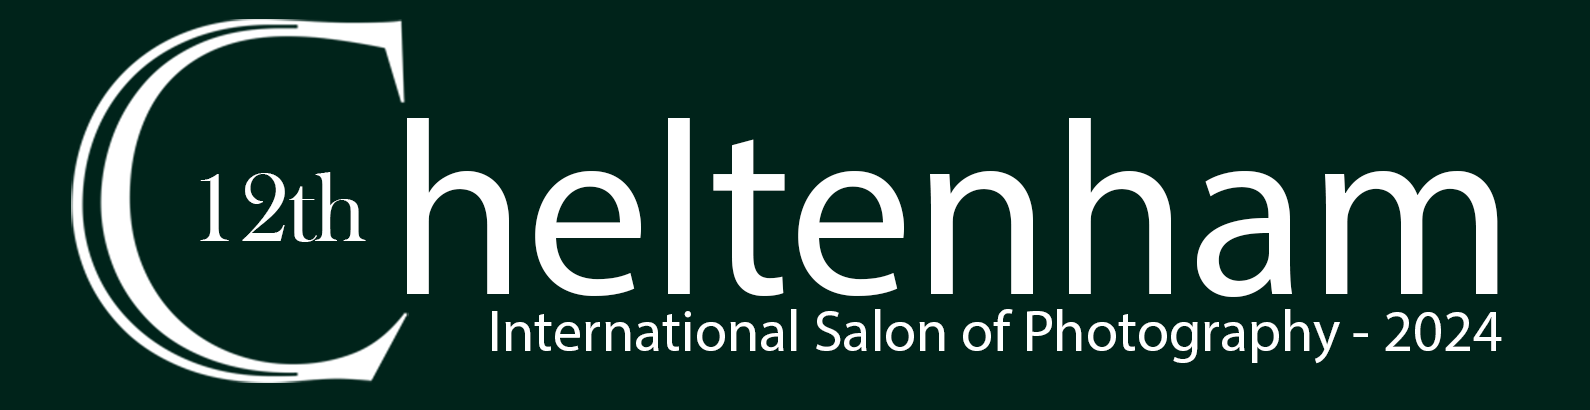 Cheltenham International Salon of Photography 2024 logo